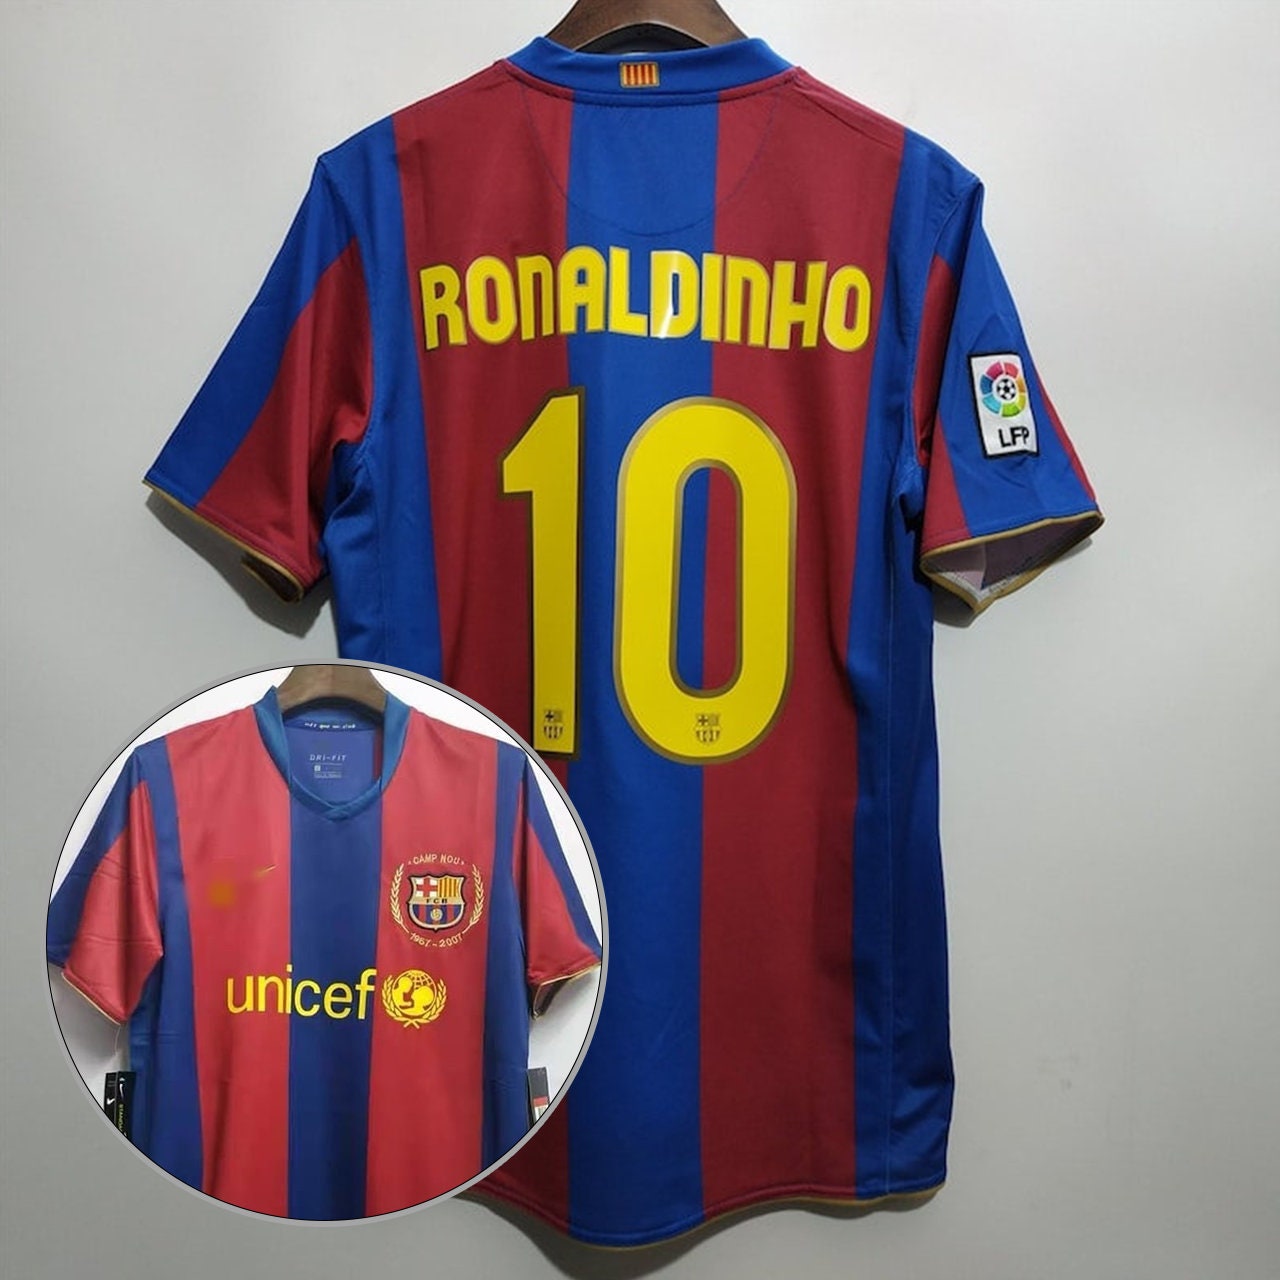 ronaldo 2008 shirt